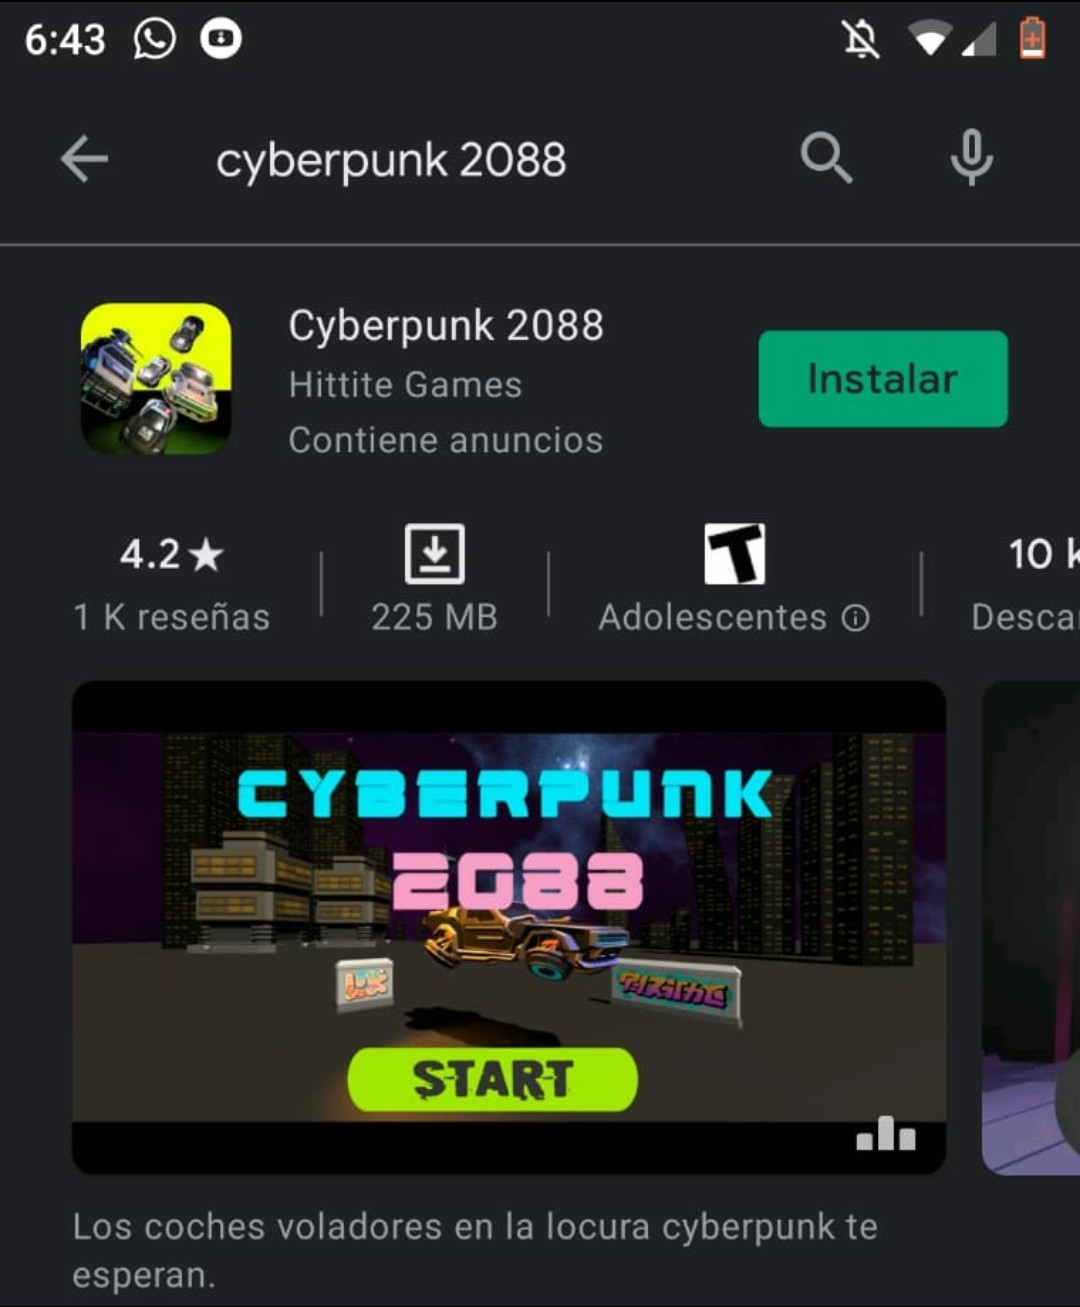 bua cyberpunk 2088 - meme